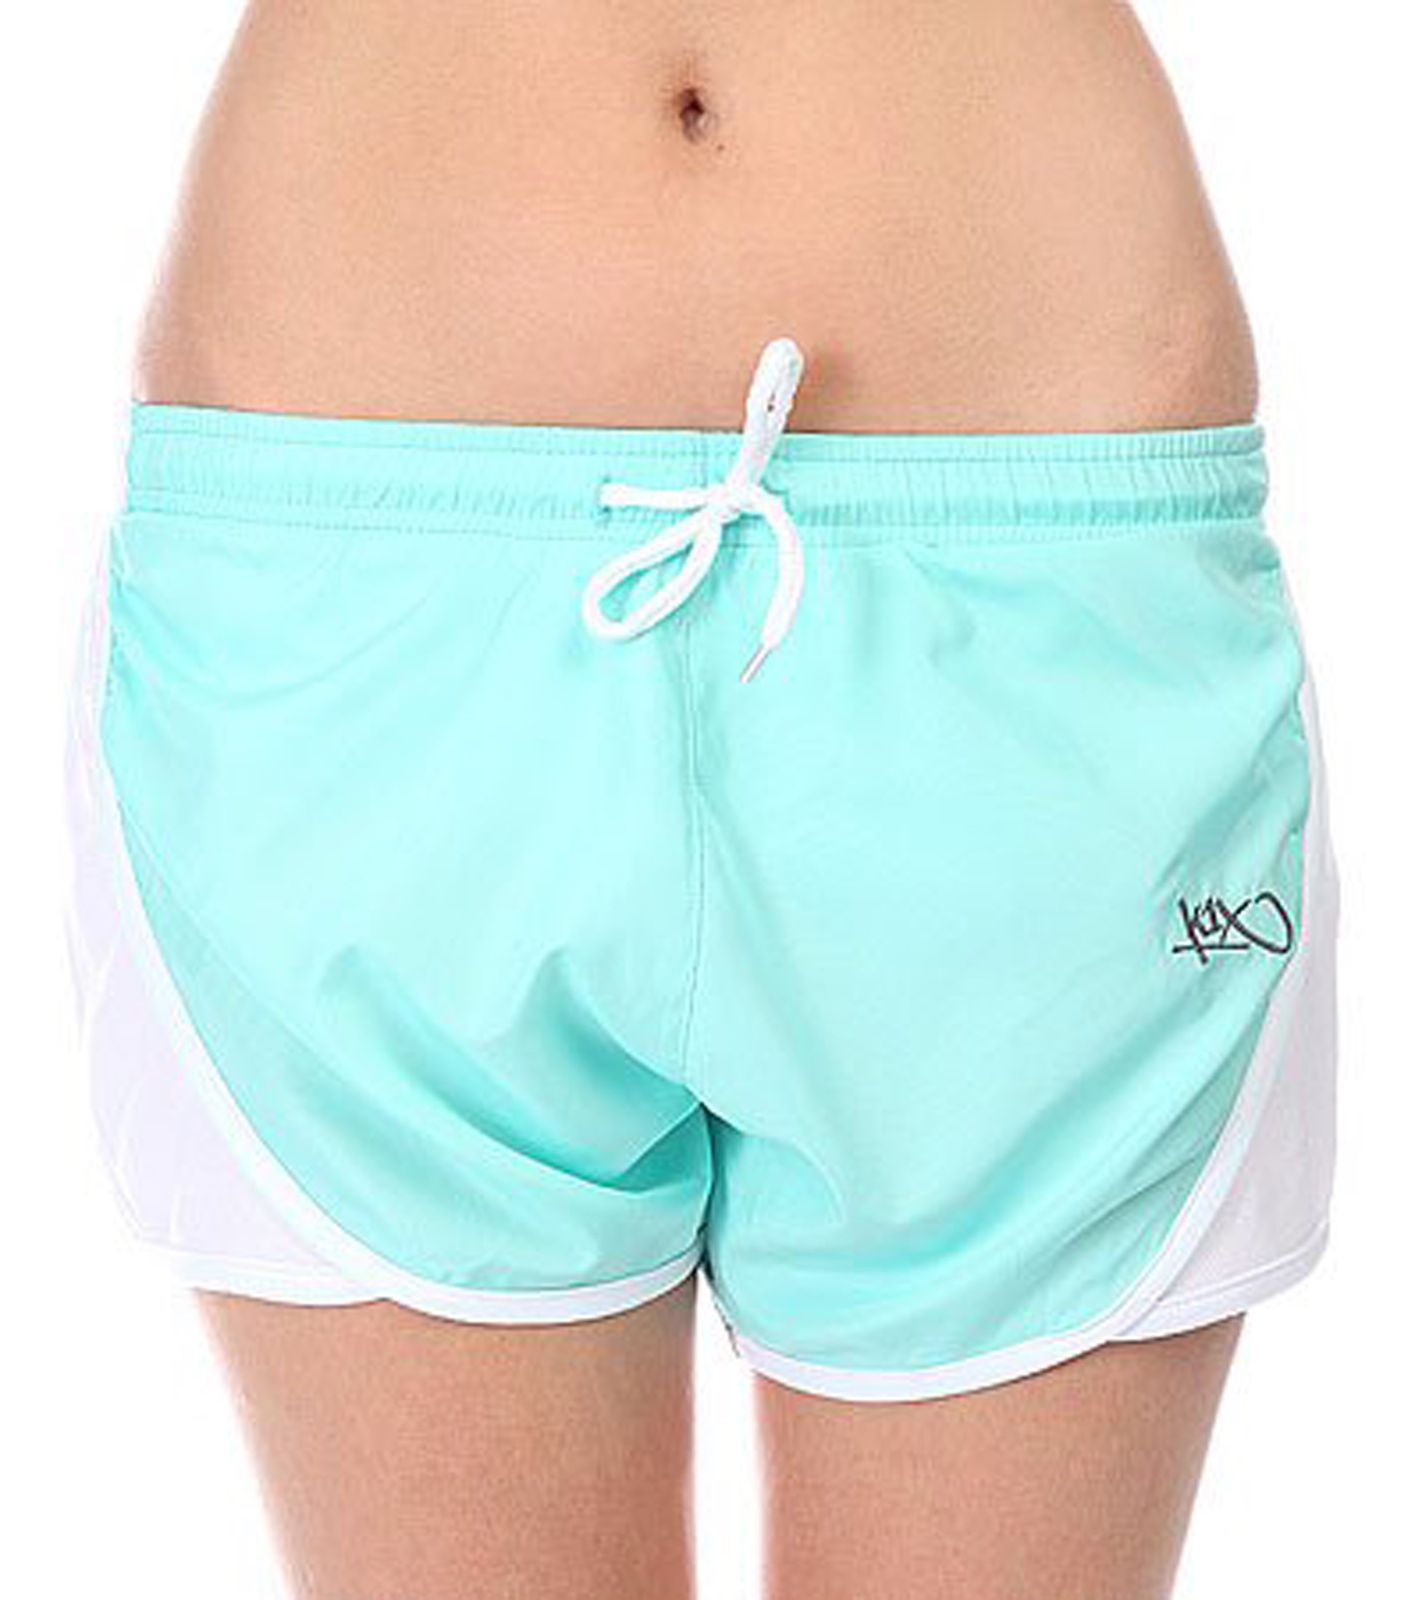 PARK AUTHORITY by K1X | Kickz Sprint Hotpants Damen Shorts mit Innenslip 6400-0034/3102 Mint/Weiß von K1X | KICKZ